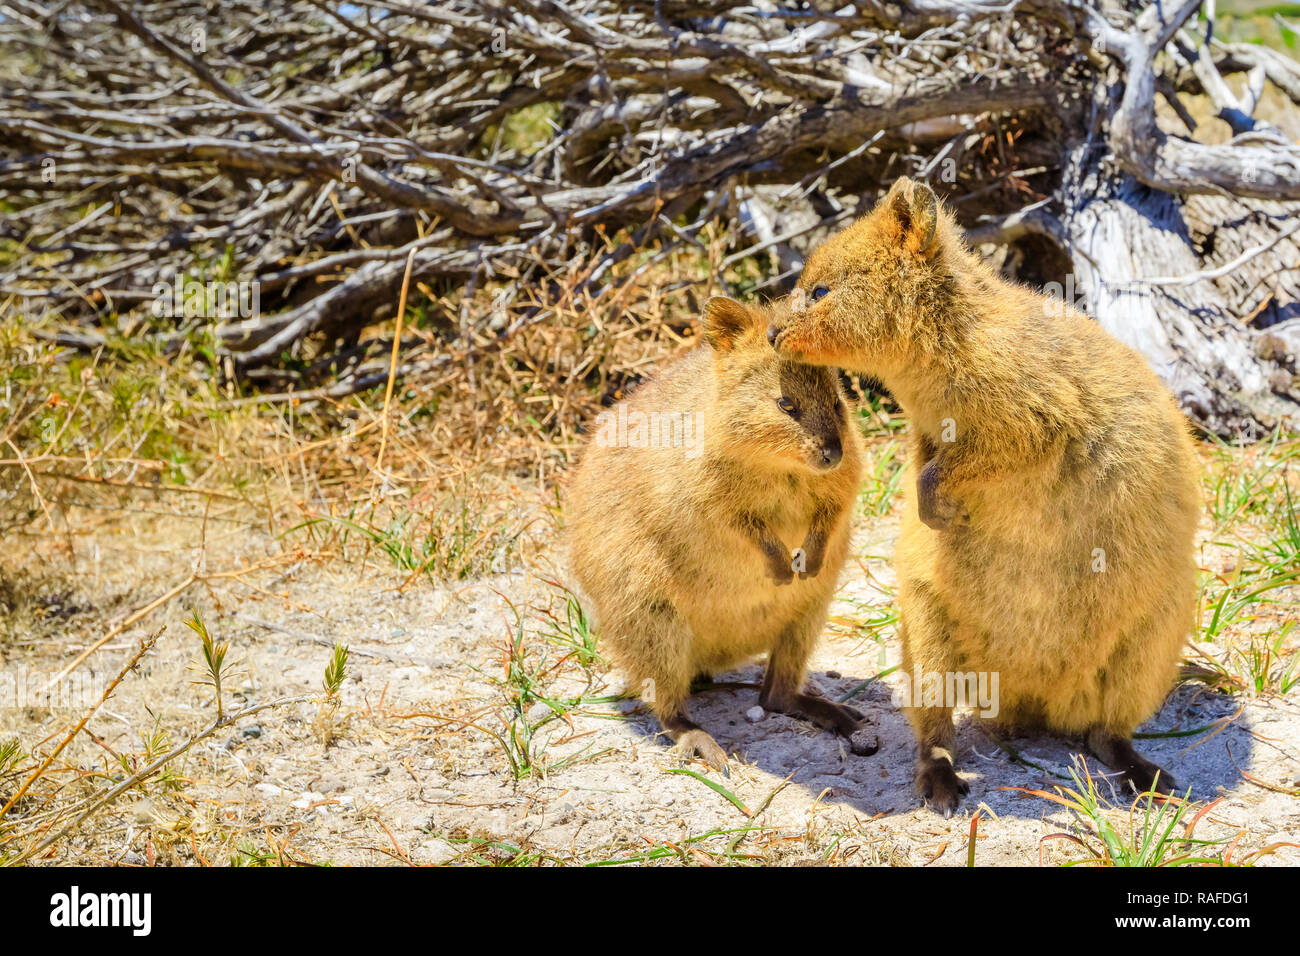 Un couple de Quokka, Chrysocyon brachyurus. Rottnest Island, près de Perth, Australie occidentale, est le principal foyer de la quokka, un type de marsupial. Quokka est considéré comme l'animal le plus heureux au monde. Banque D'Images